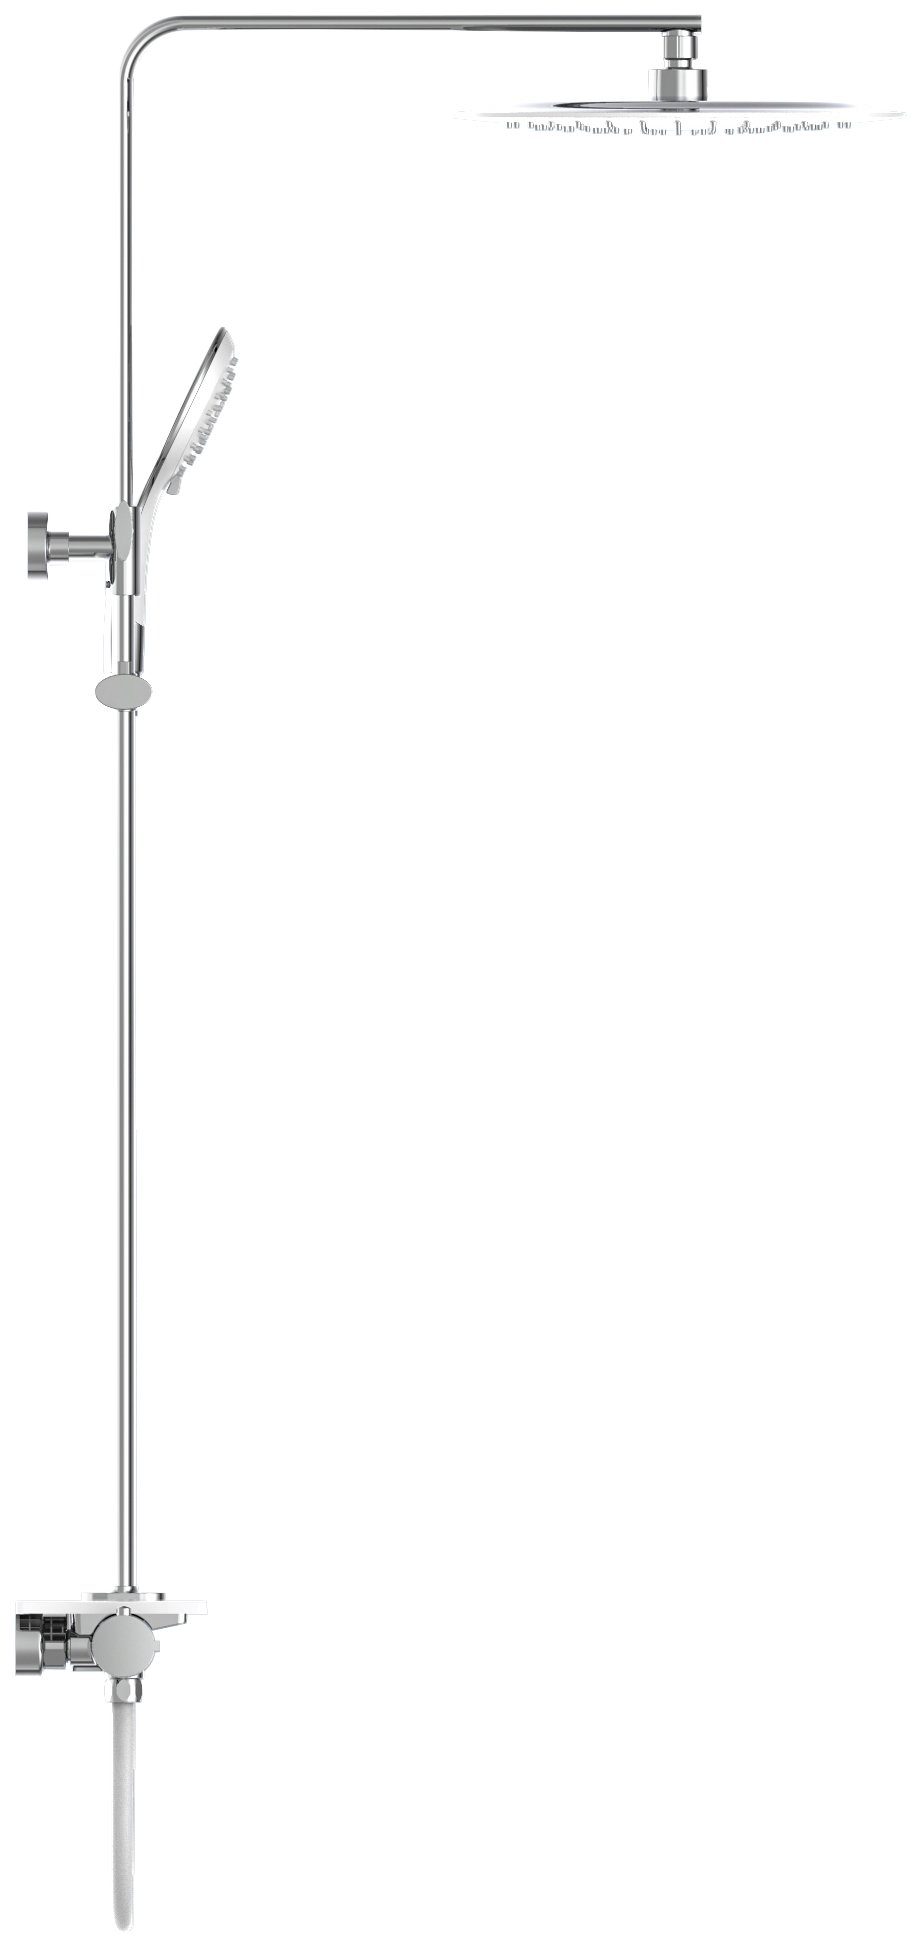 Eisl Brausegarnitur Grande Vita, Höhe 101 mit Thermostat Wandhalterung Ablage, Regendusche und cm, Duschsystem mit weiß-chromfarben